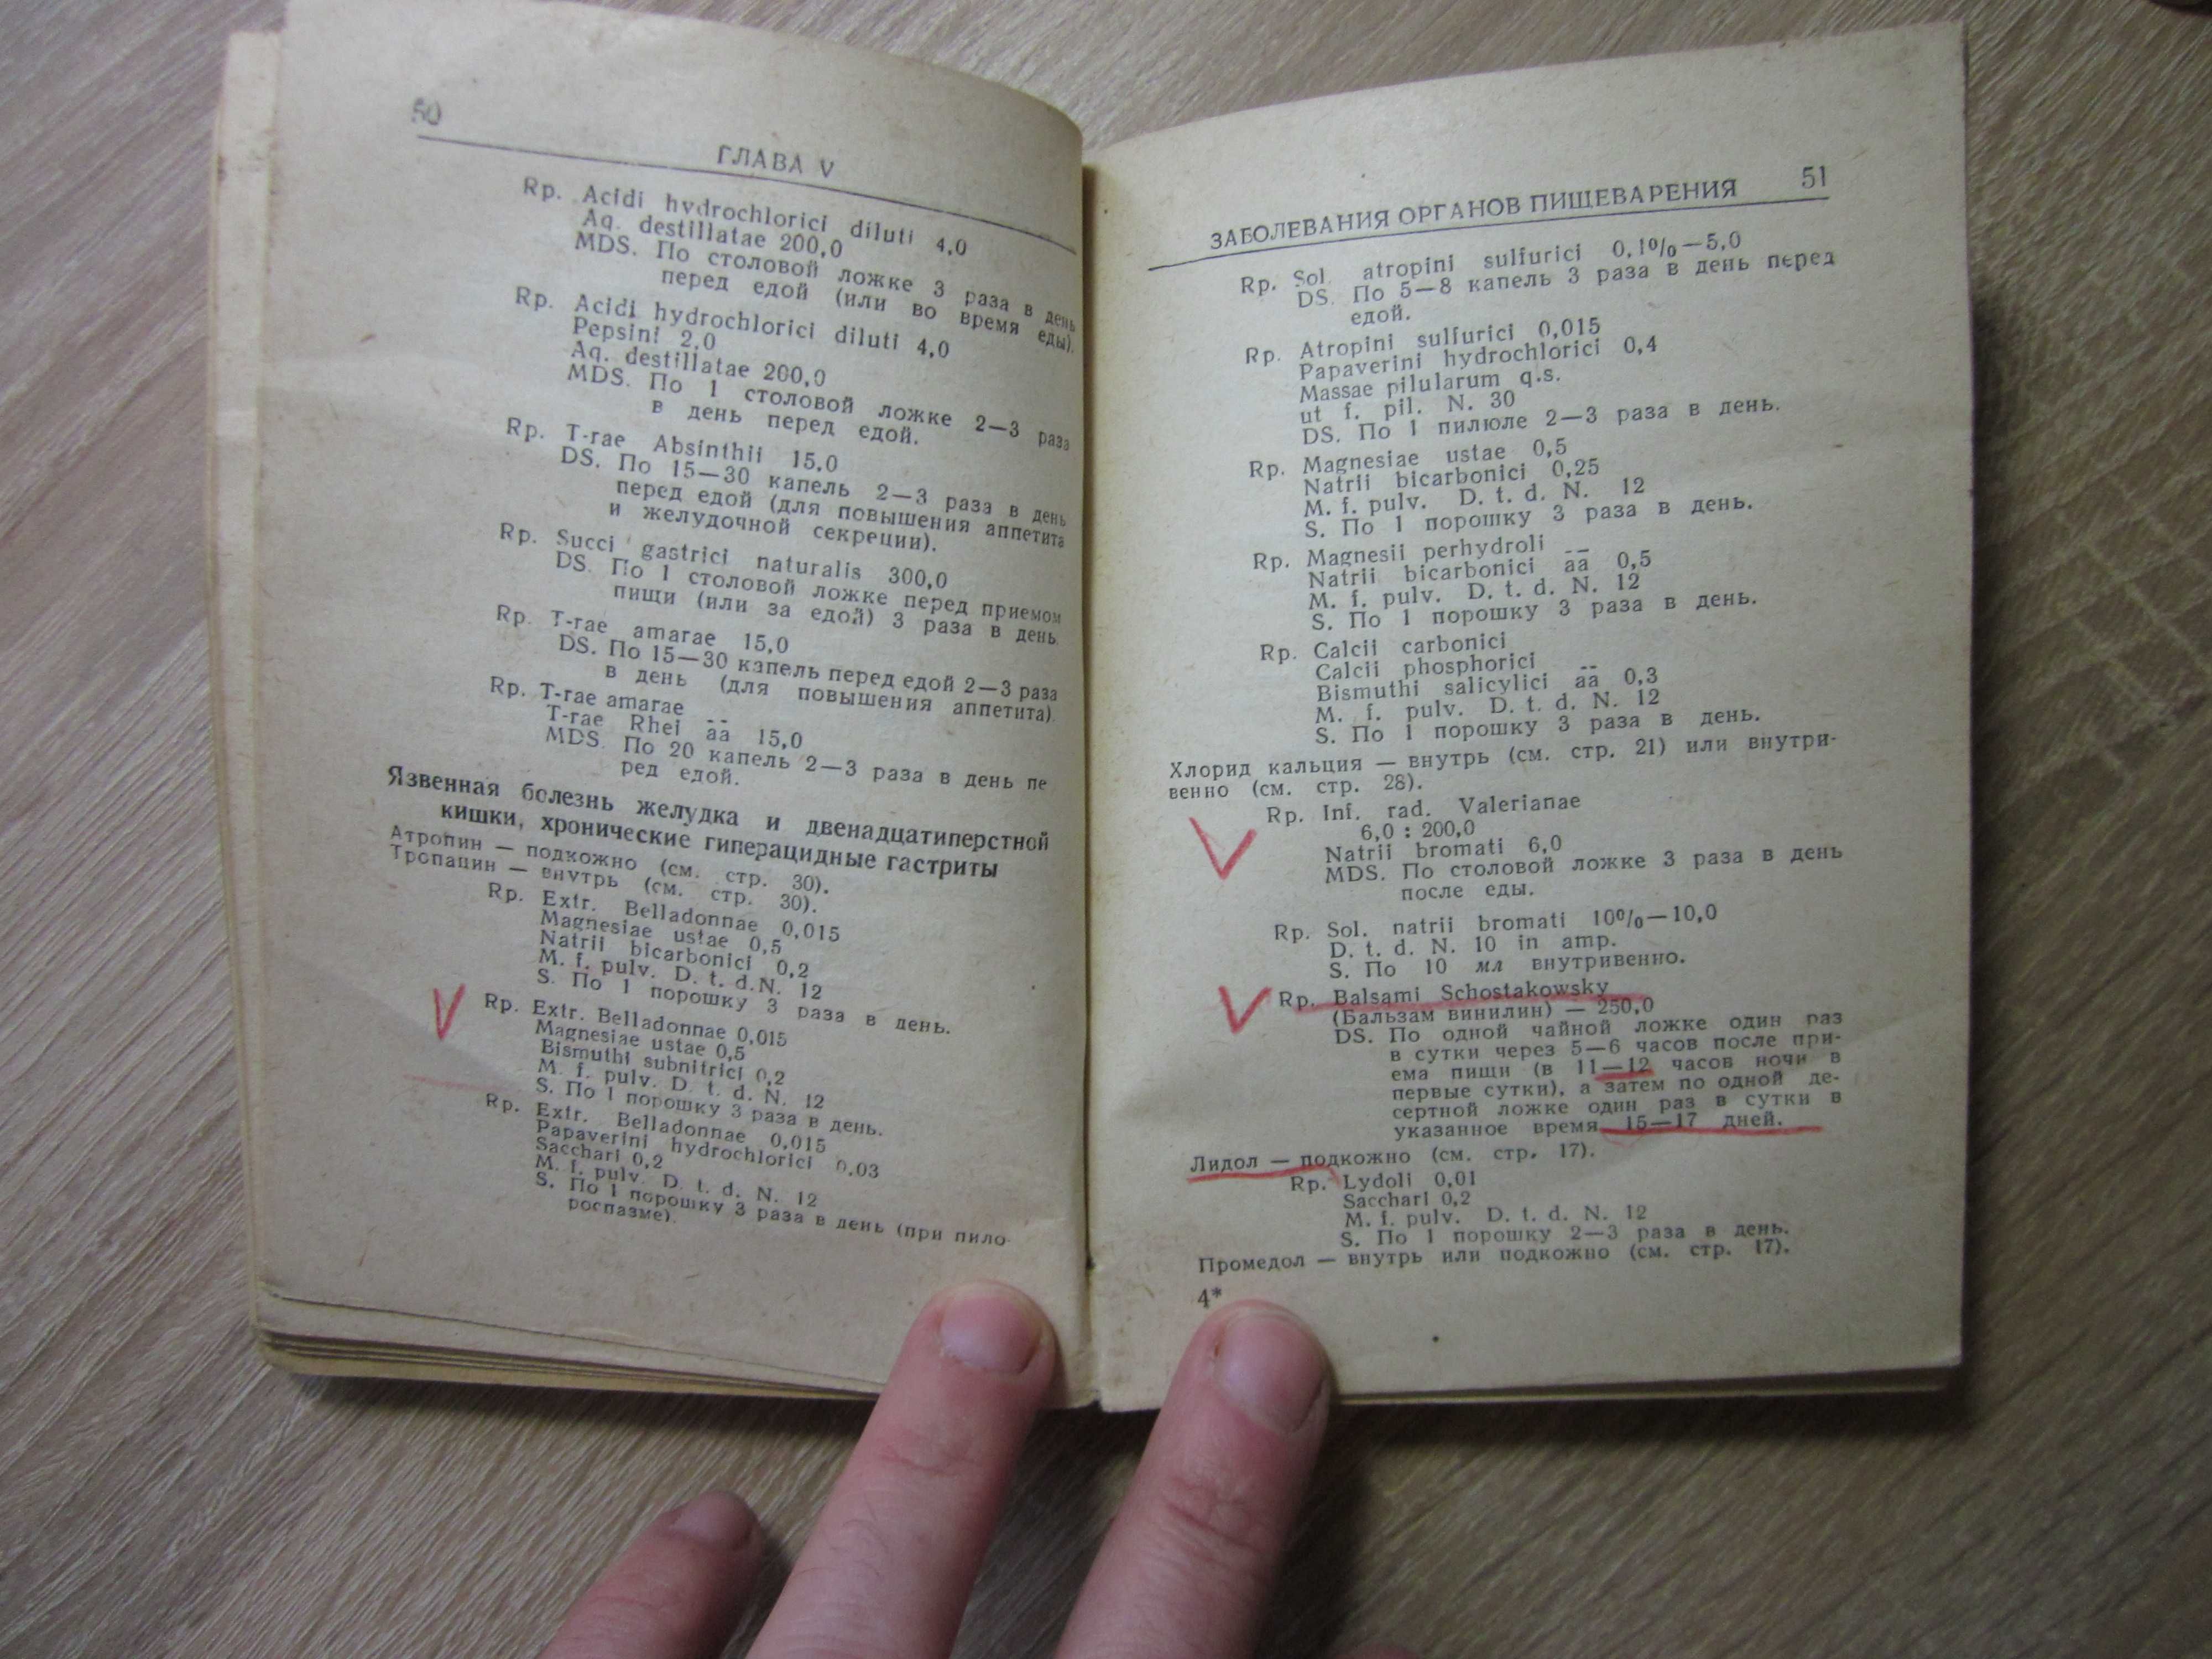 Praescriptiones / Рецептурный справочник 1958 года